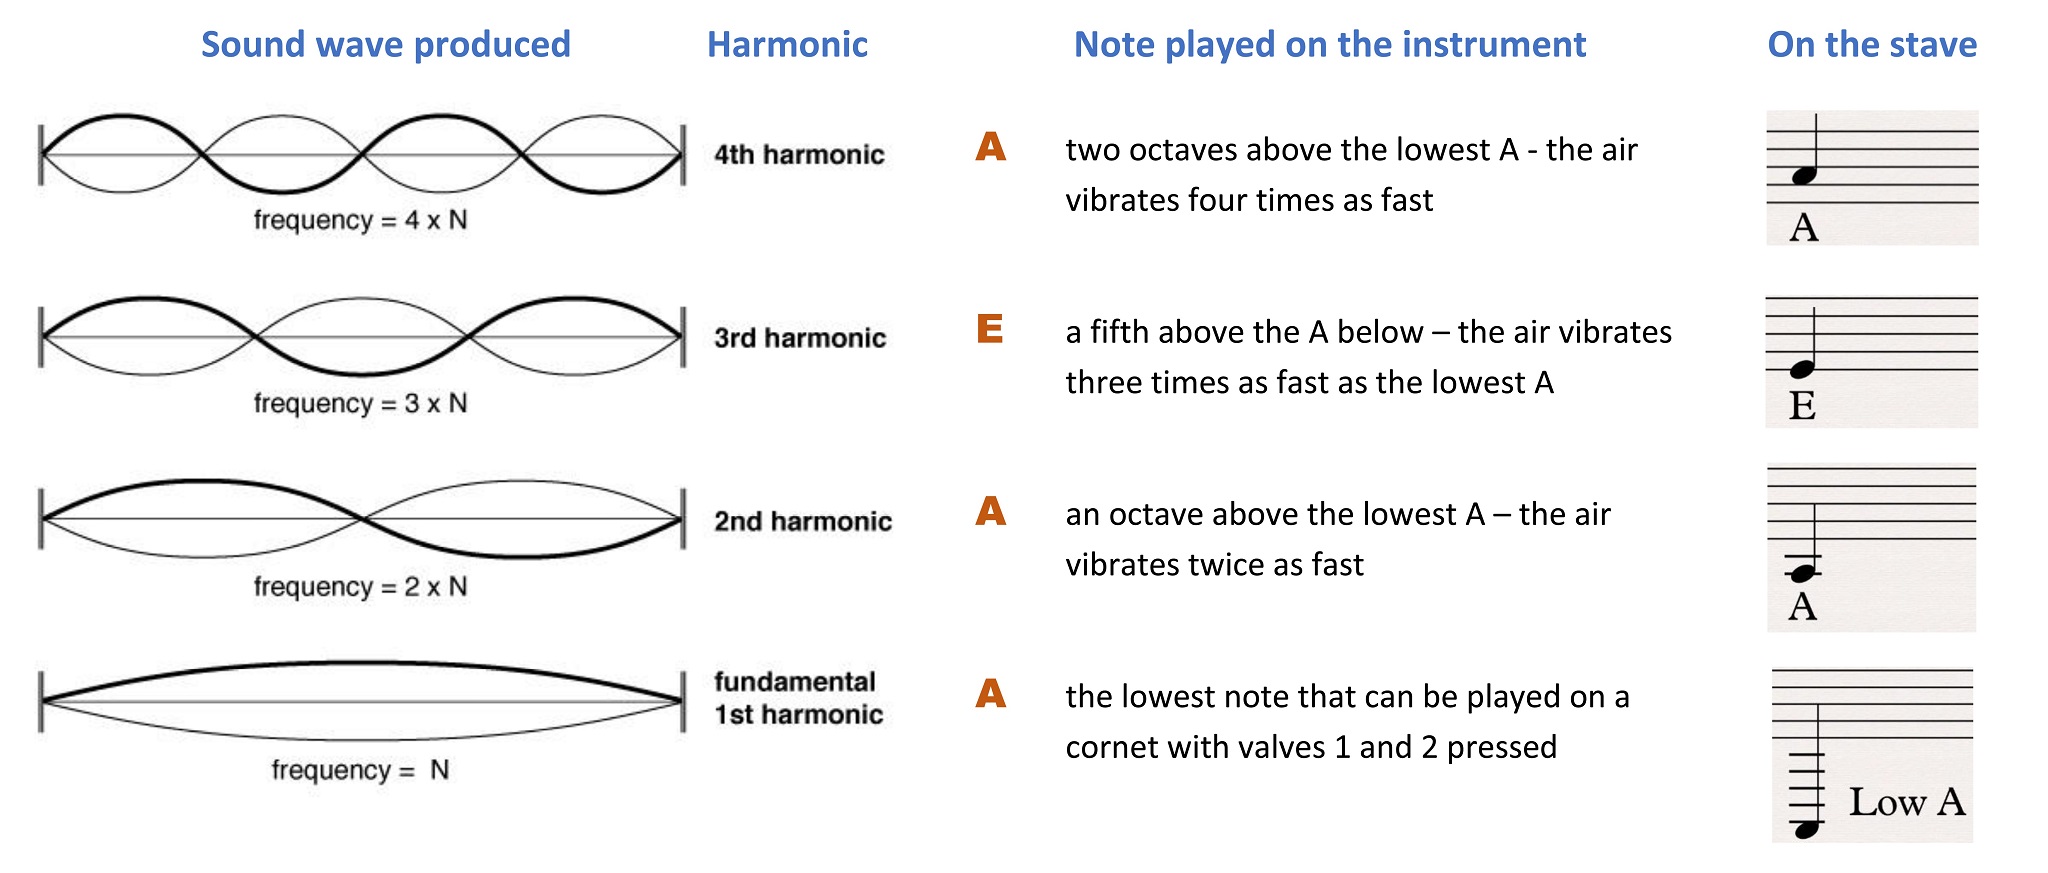 Harmonics A and E a fifth